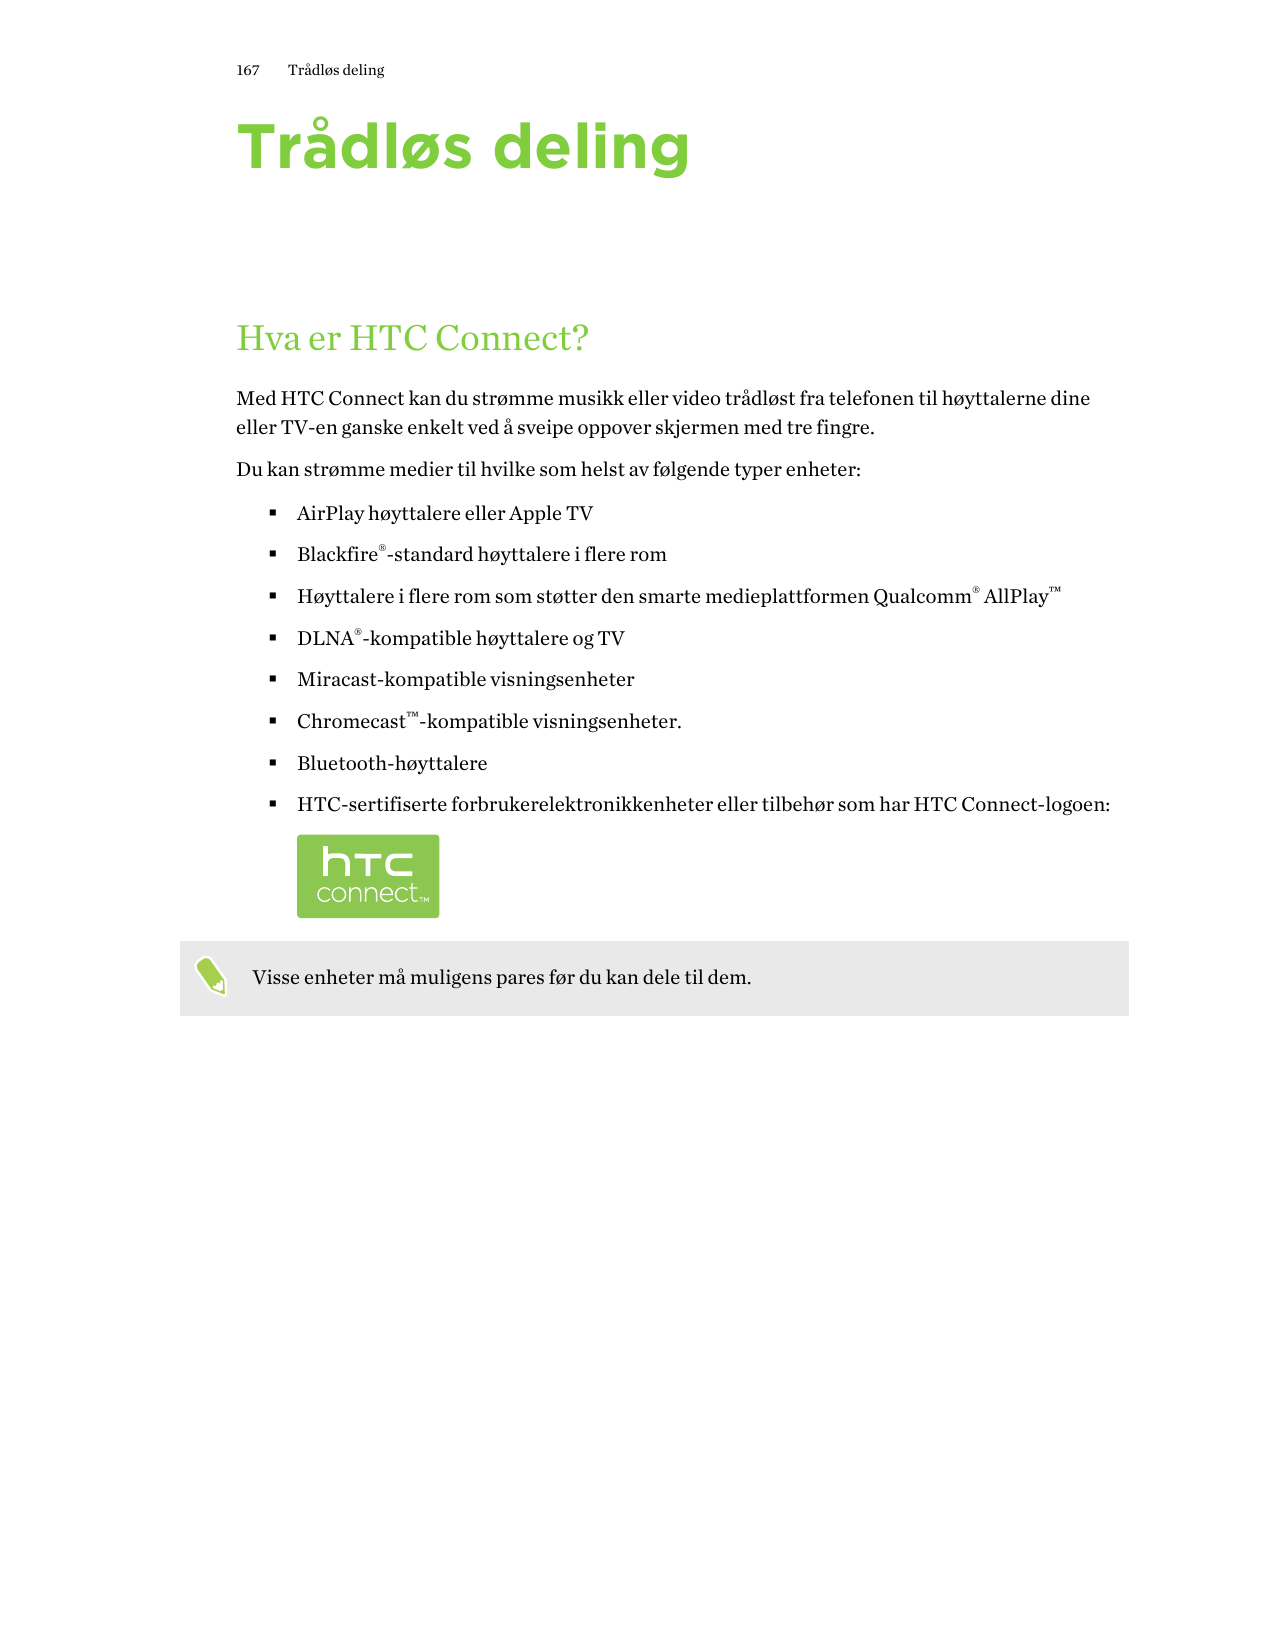 167Trådløs delingTrådløs delingHva er HTC Connect?Med HTC Connect kan du strømme musikk eller video trådløst fra telefonen til h